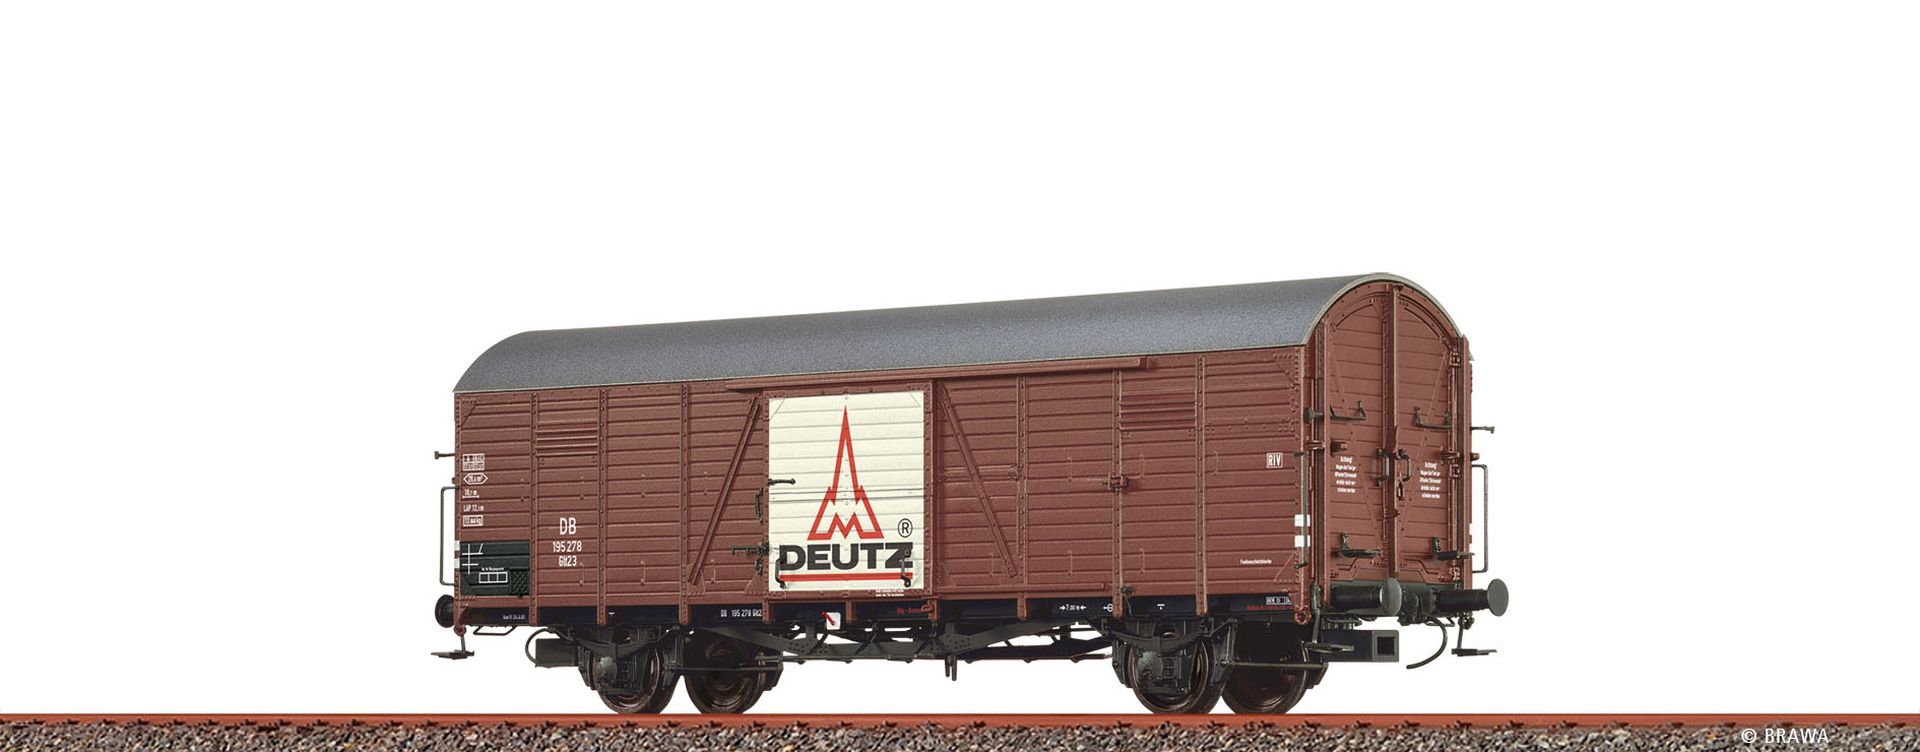 Brawa 50487 - Gedeckter Güterwagen Glr 23 'Deutz', DB, Ep.III